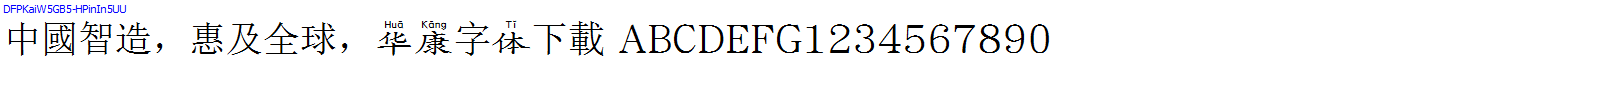 華康字體DFPKaiW5GB5-HPinIn5UU.TTF